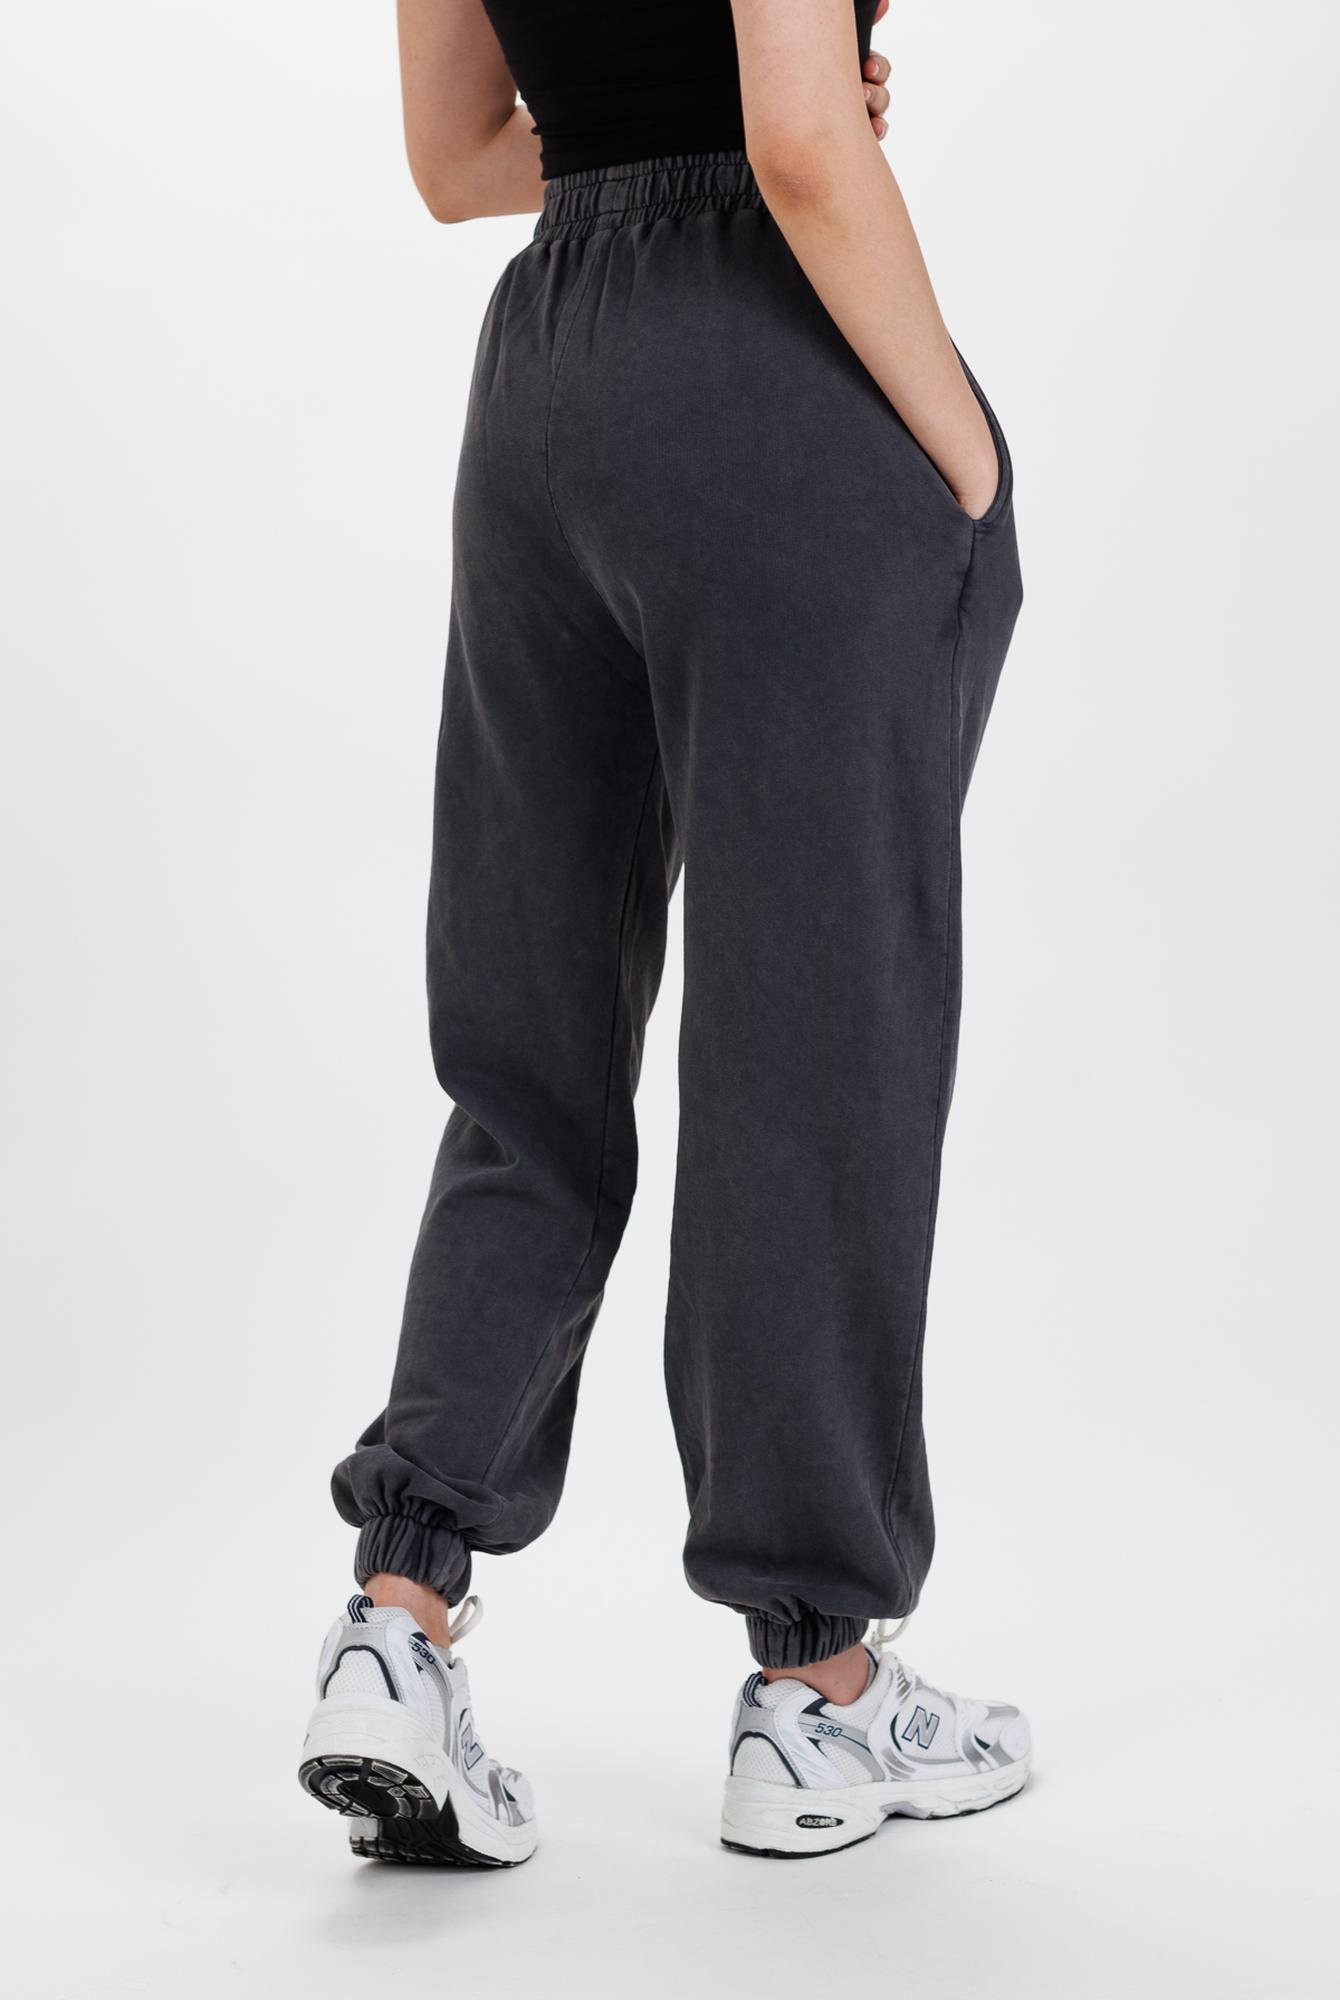  Ecrou Kadın Siyah Lastik Paça Jogger Ultra Soft Örme Pantolon